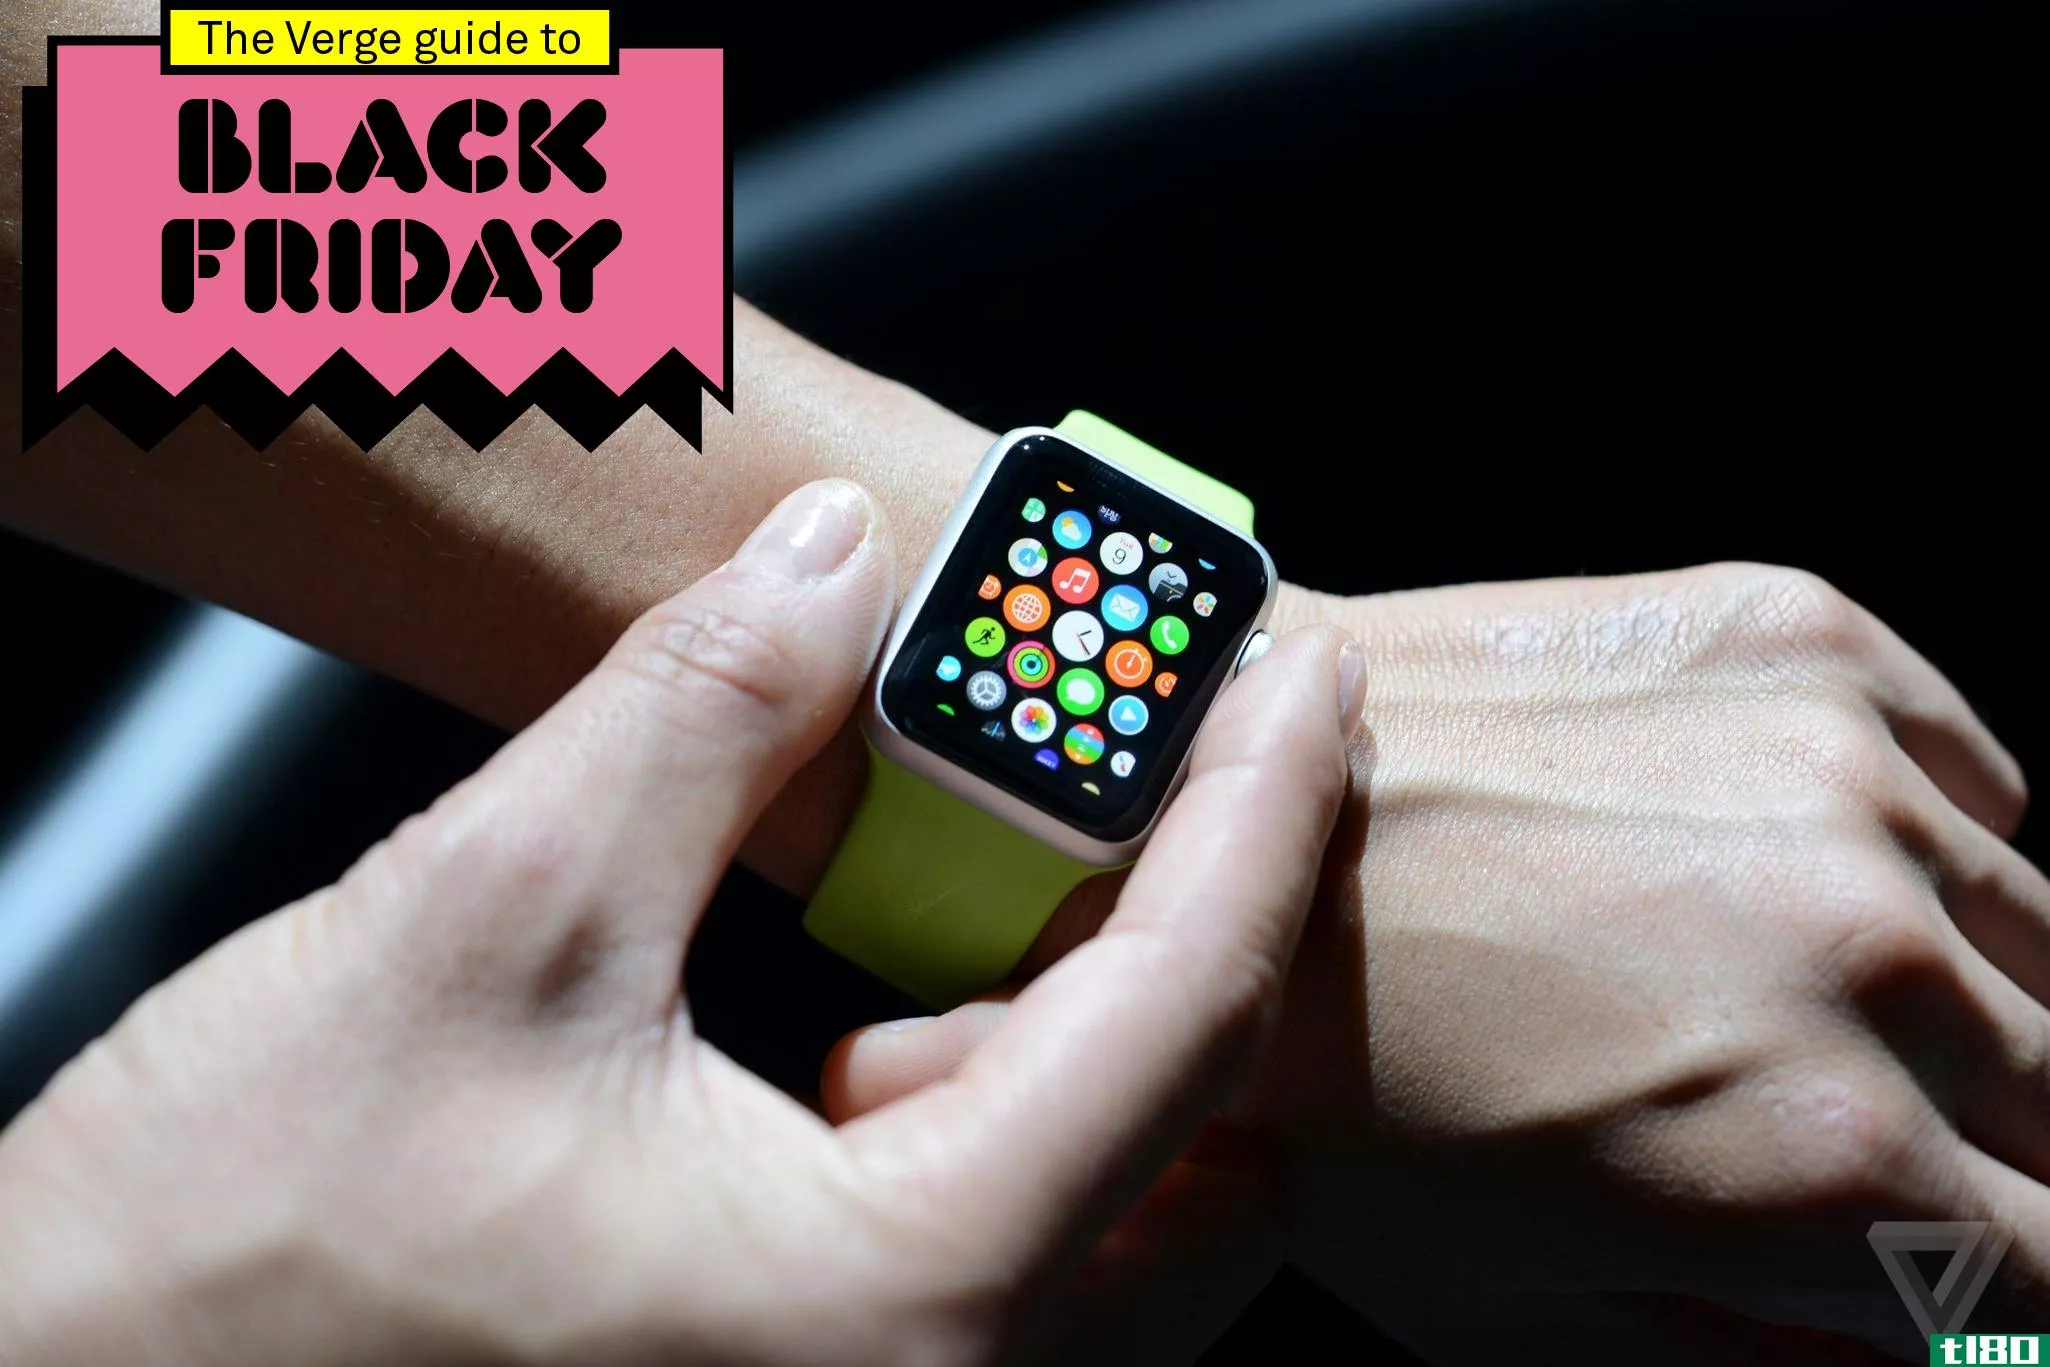 target在2015年的黑色星期五交易包括iPad、apple watch和beats耳机